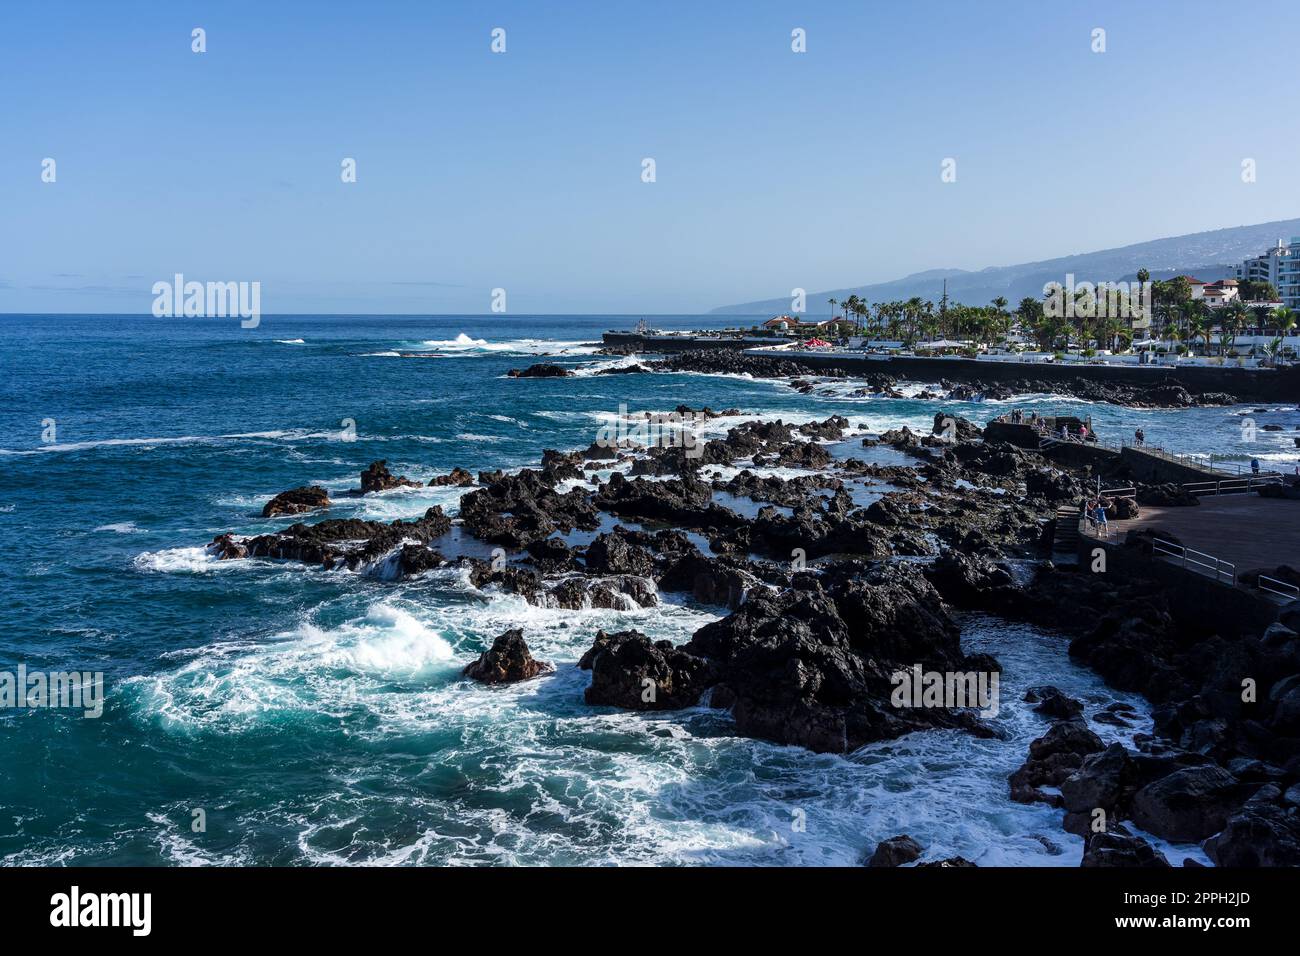 Quai d'une ville touristique populaire Puerto de la Cruz sur l'île de Tenerife, îles Canaries. Espagne. Banque D'Images